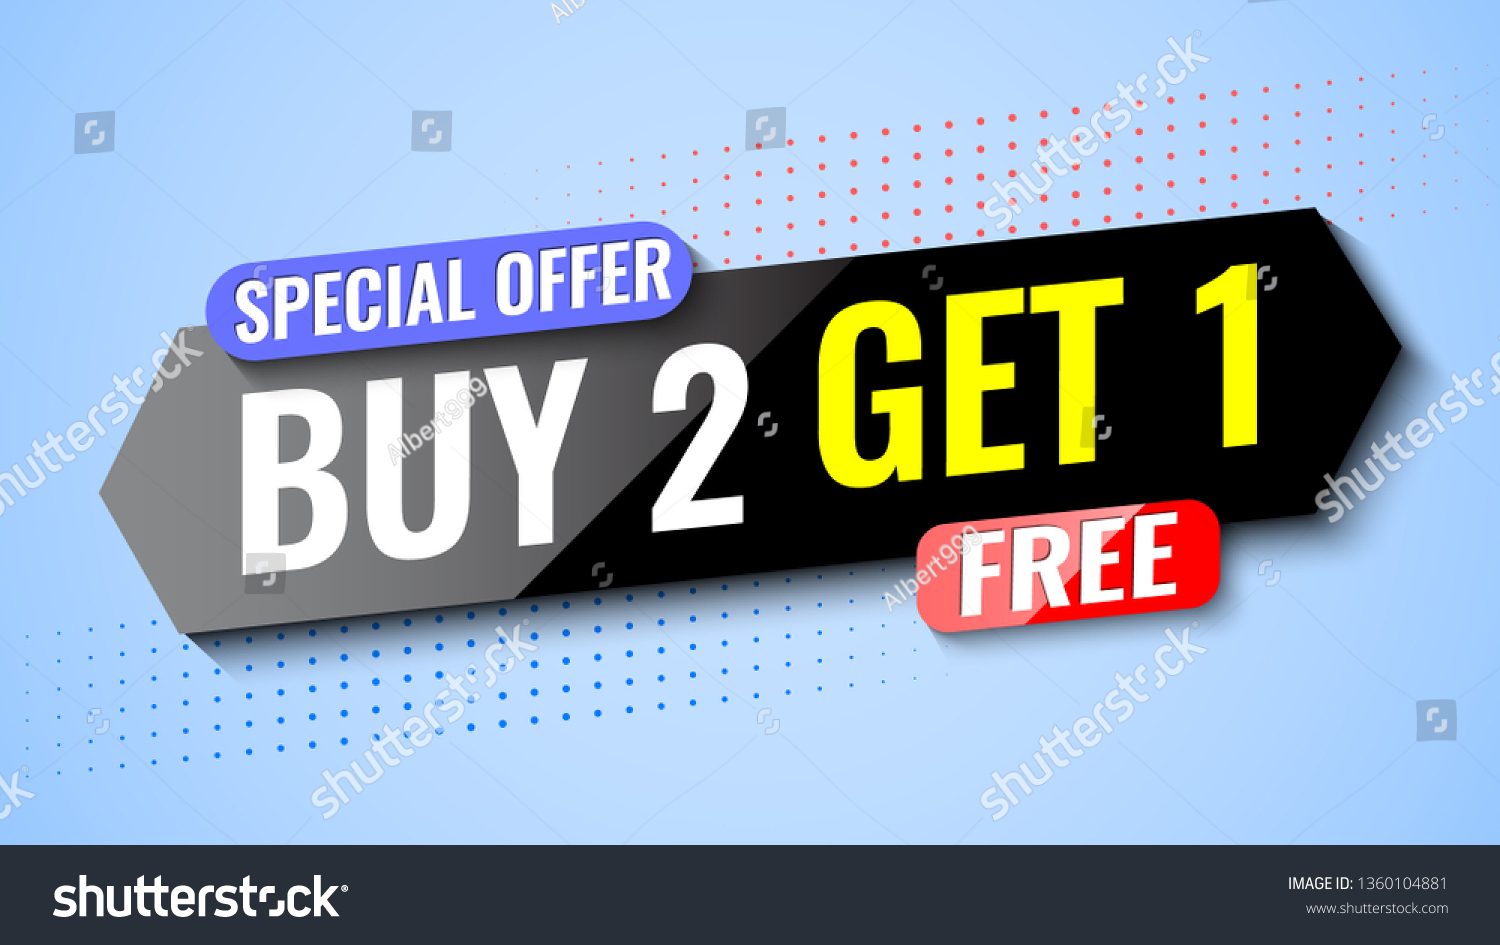 SVG of Buy 2, get 1 free. Special offer banner. Vector illustration. svg